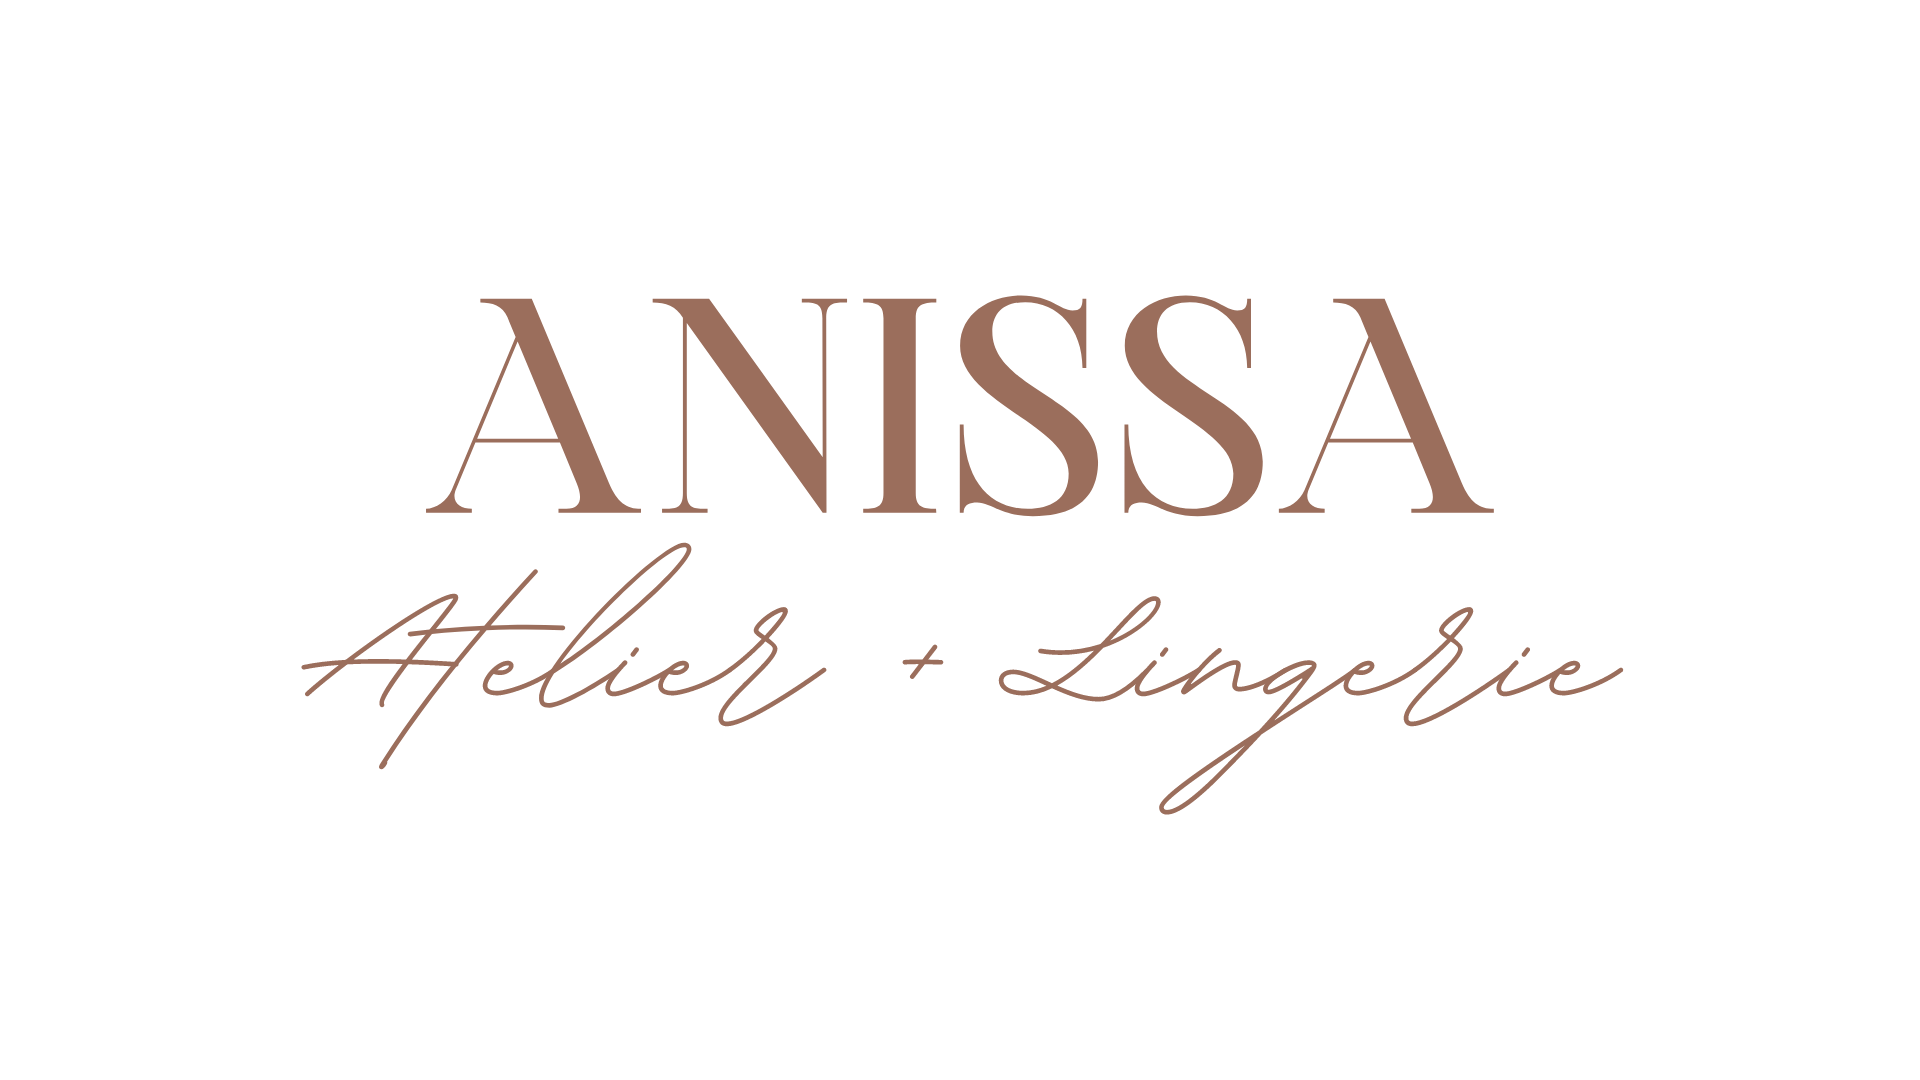 ANISSA ATELIER – Anissa Atelier